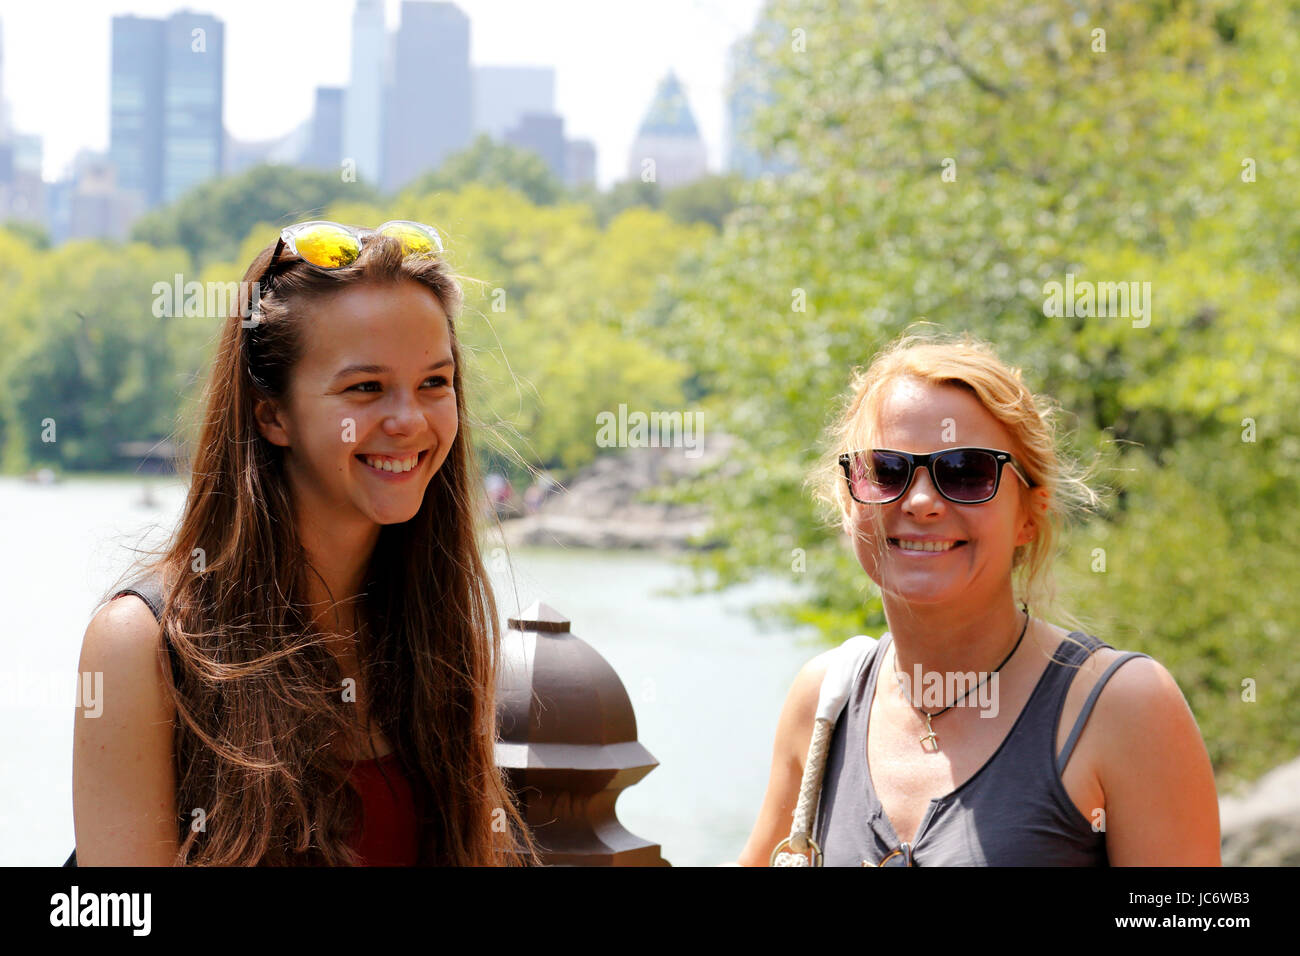 Les touristes. Mather et sa fille. Central Park. Manhattan. La ville de New York. US 17, 18, 19, 20, 21, 25, 40, 44, 45, 49, 50, 54, ans, ans Banque D'Images